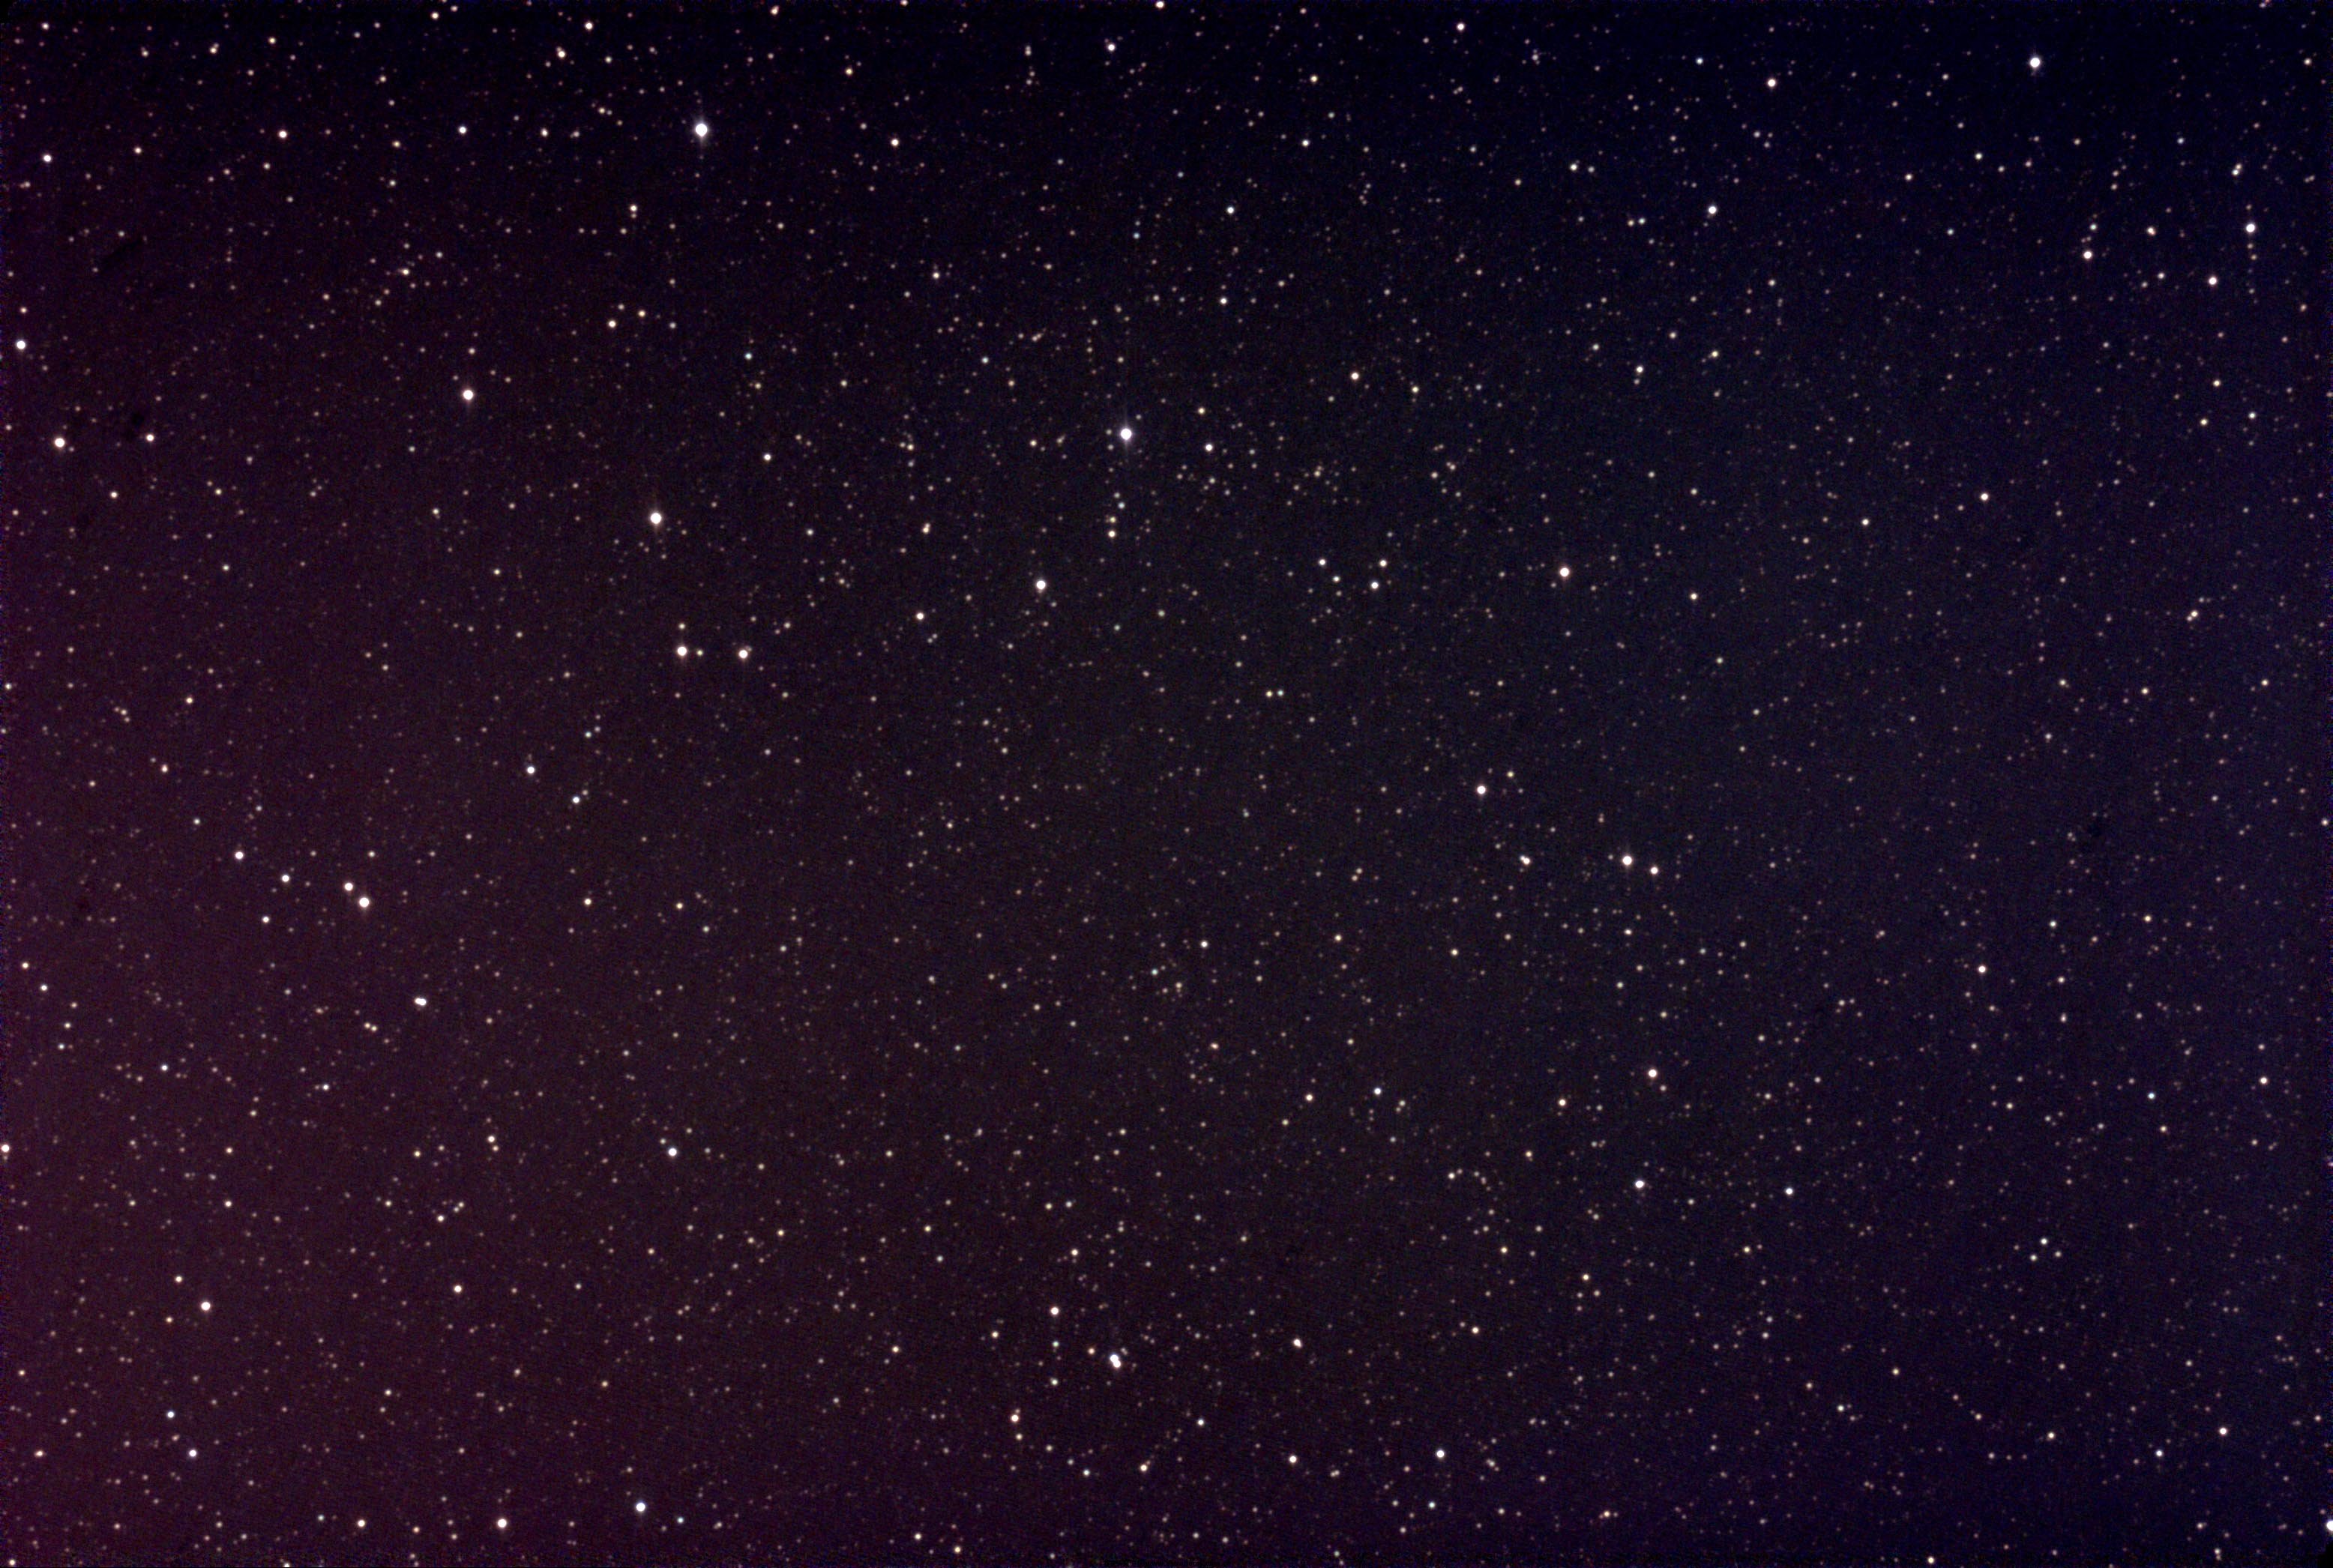 劳士顿暗夜星空图片